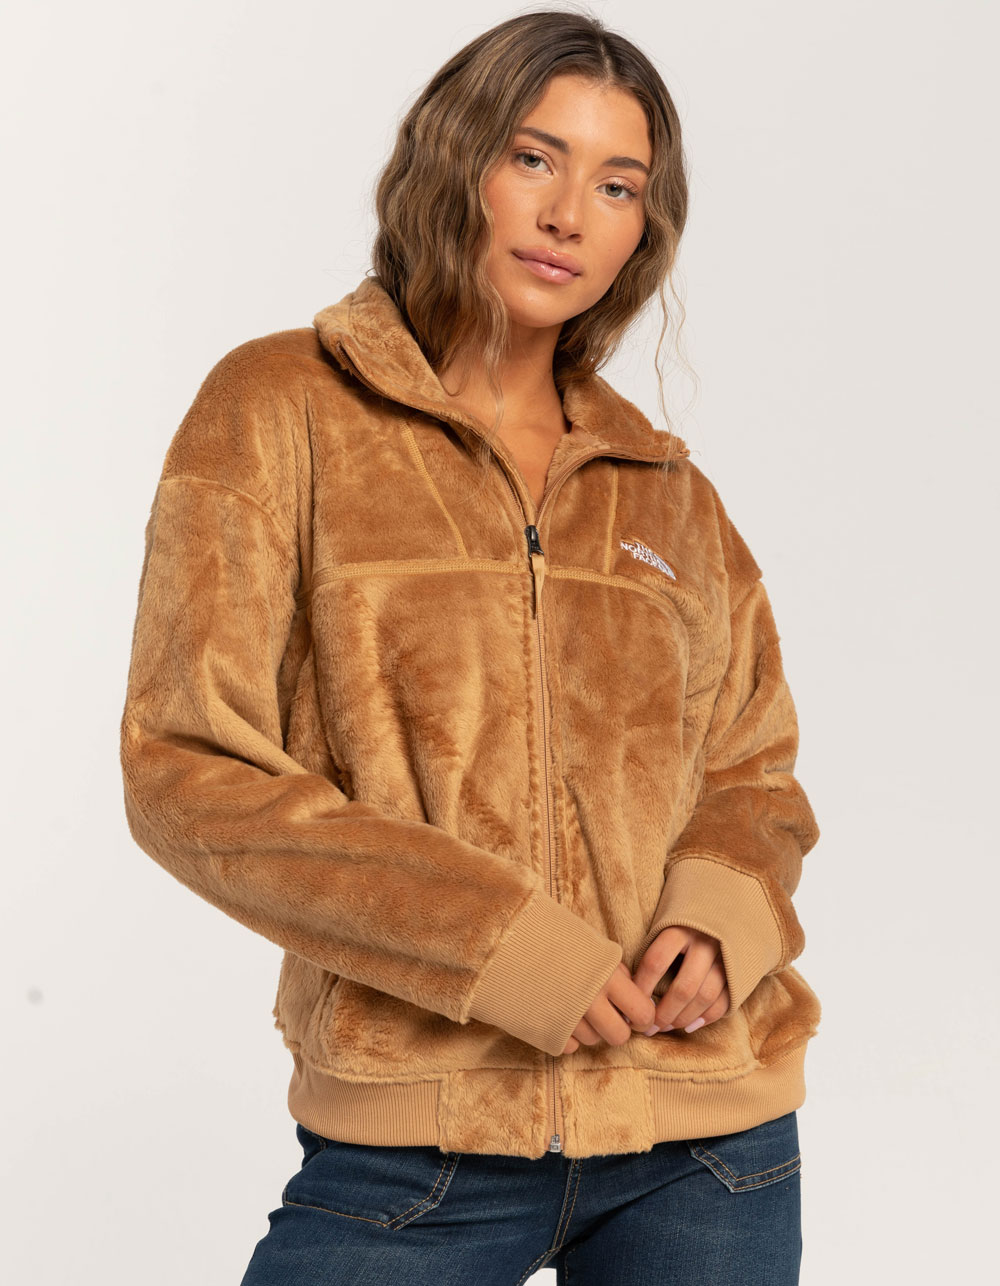 North Face Osito Jacket Large - Coats & Jackets, Facebook Marketplace